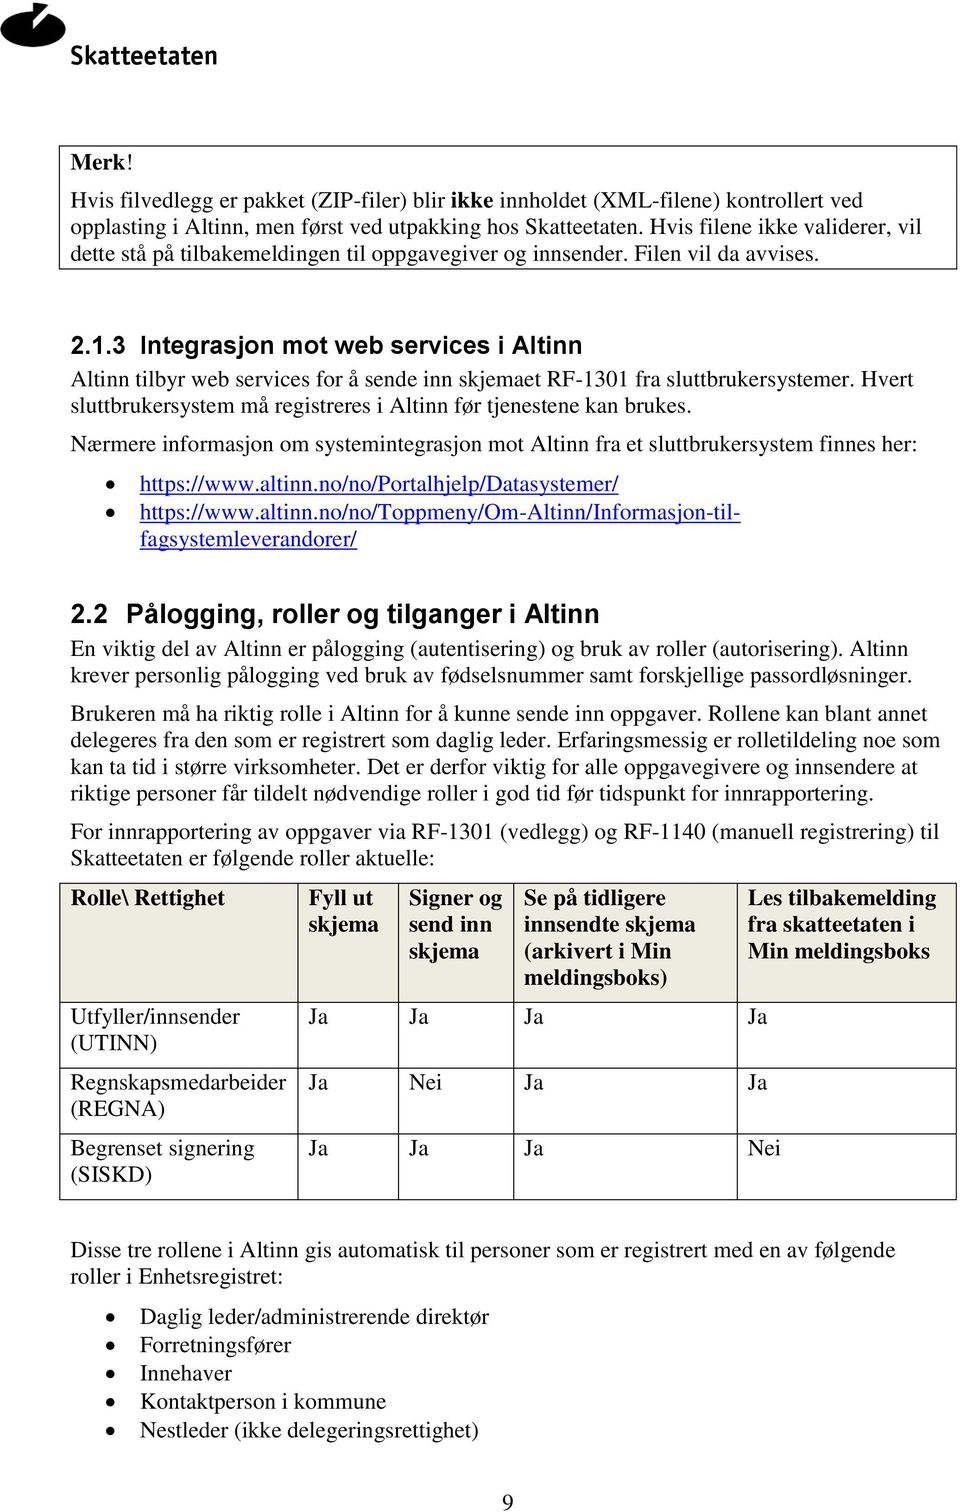 3 Integrasjon mot web services i Altinn Altinn tilbyr web services for å sende inn skjemaet RF-1301 fra sluttbrukersystemer. Hvert sluttbrukersystem må registreres i Altinn før tjenestene kan brukes.